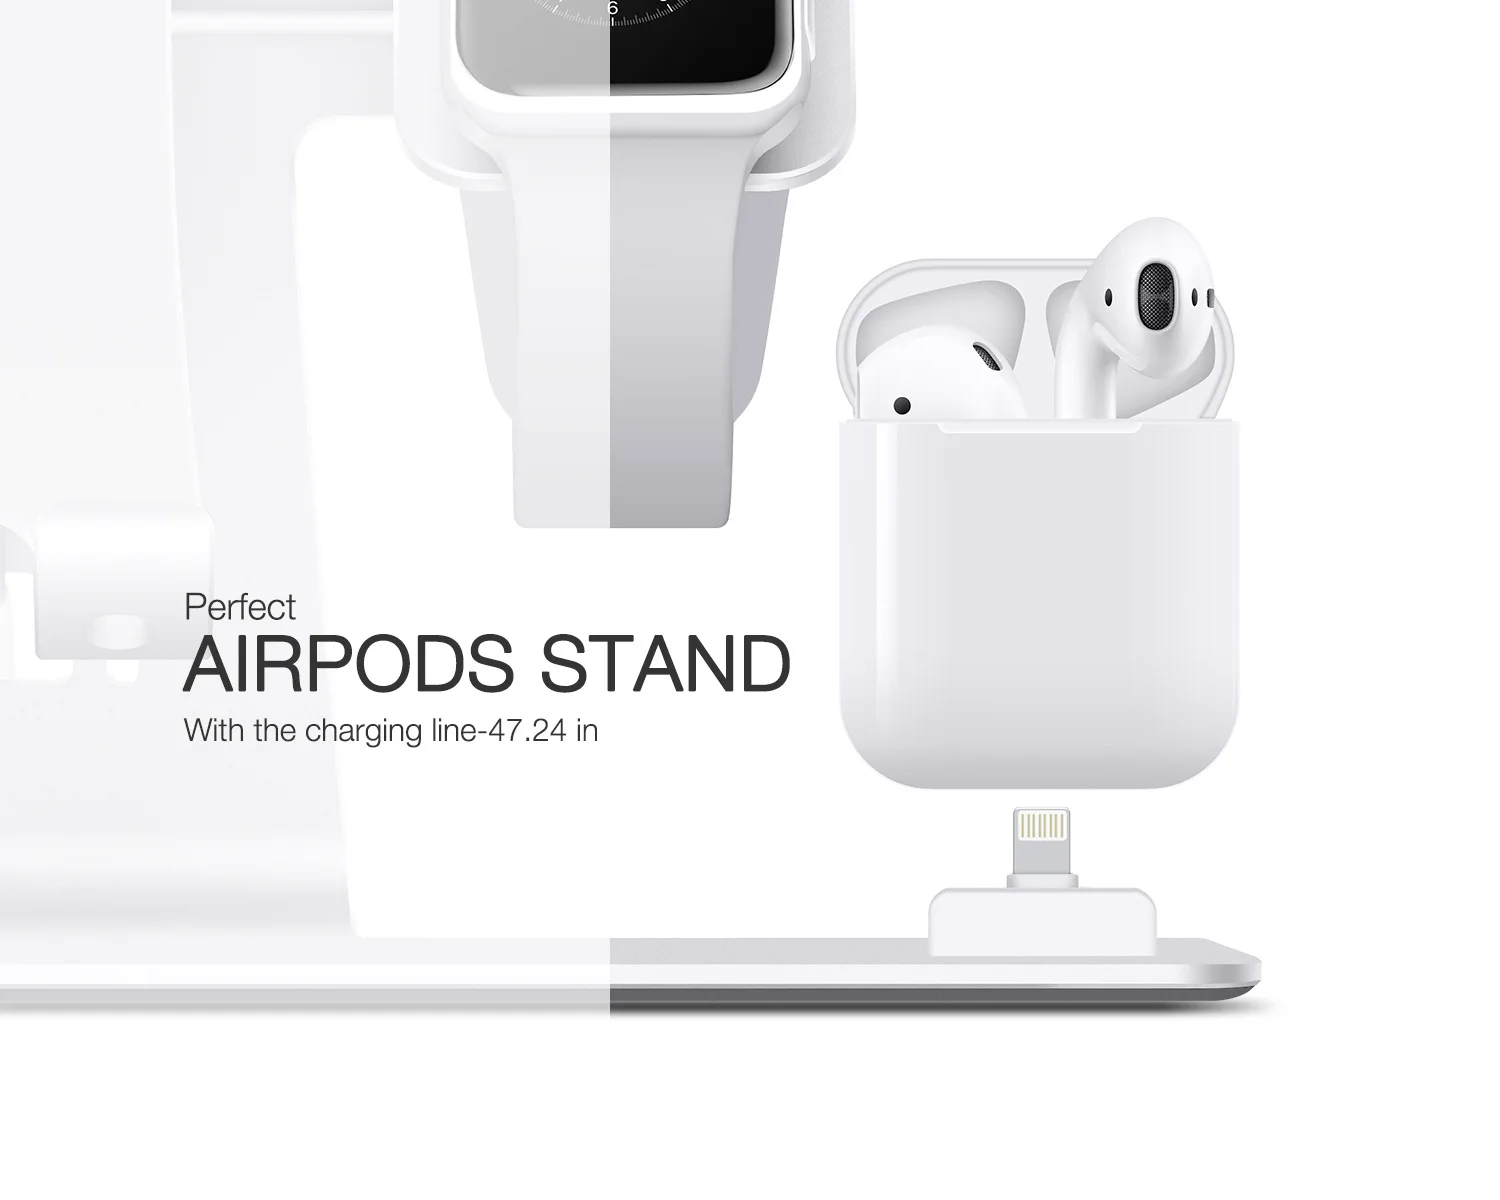 3 в 1 алюминиевая Qi Беспроводная зарядная док-станция для Airpods Apple Watch 2 3 4 iPhone X Xs Max XR 8 Plus samsung S10 S9